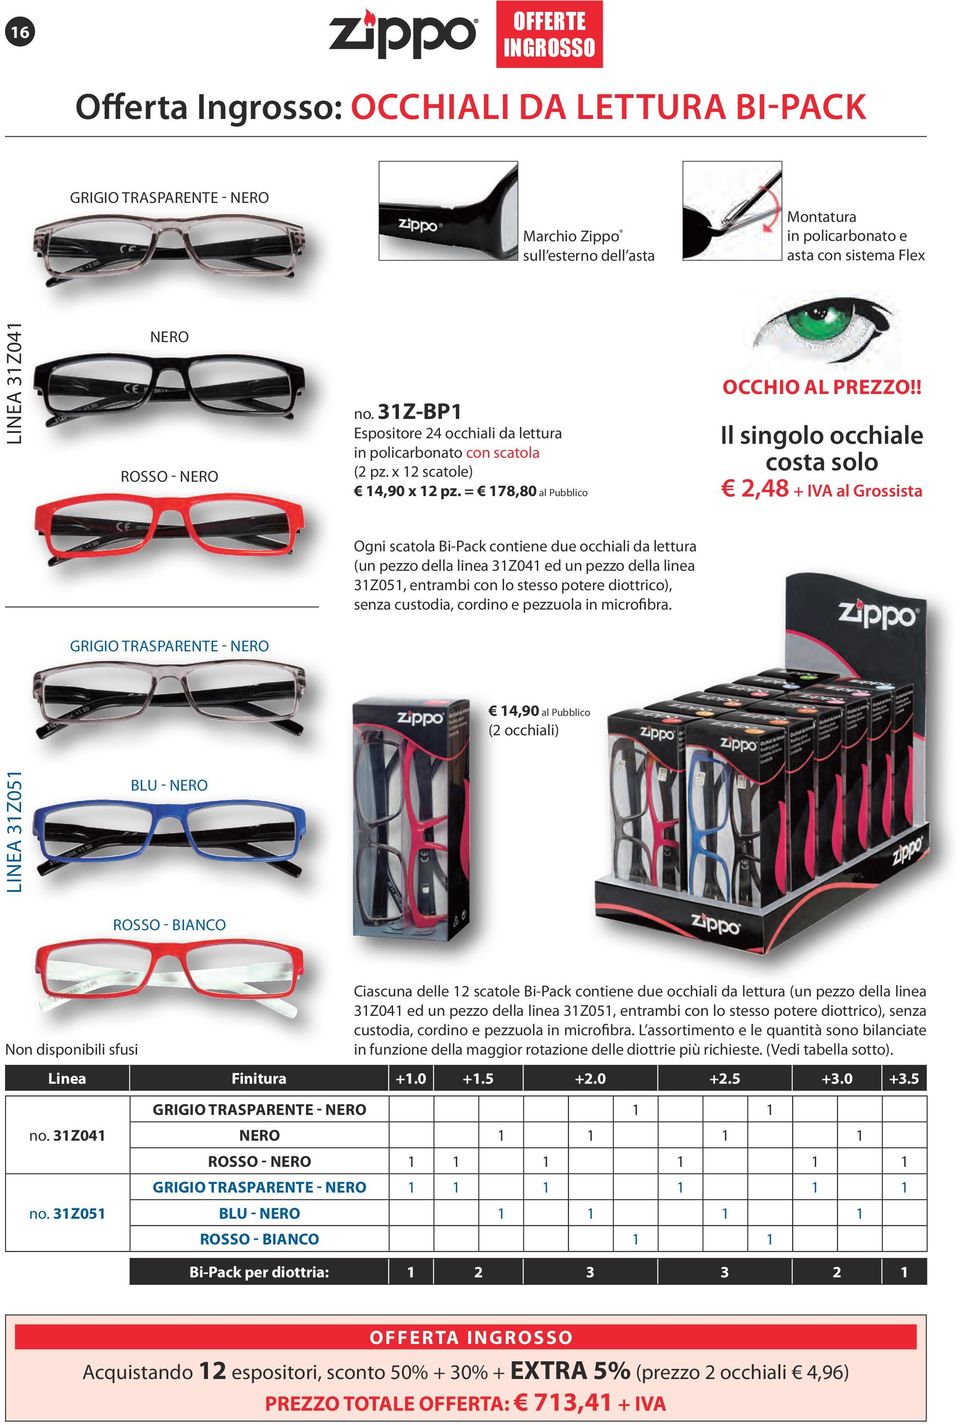 ! Il singolo occhiale costa solo 2,48 + IVA al Grossista Ogni scatola Bi-Pack contiene due occhiali da lettura (un pezzo della linea 31Z041 ed un pezzo della linea 31Z051, entrambi con lo stesso